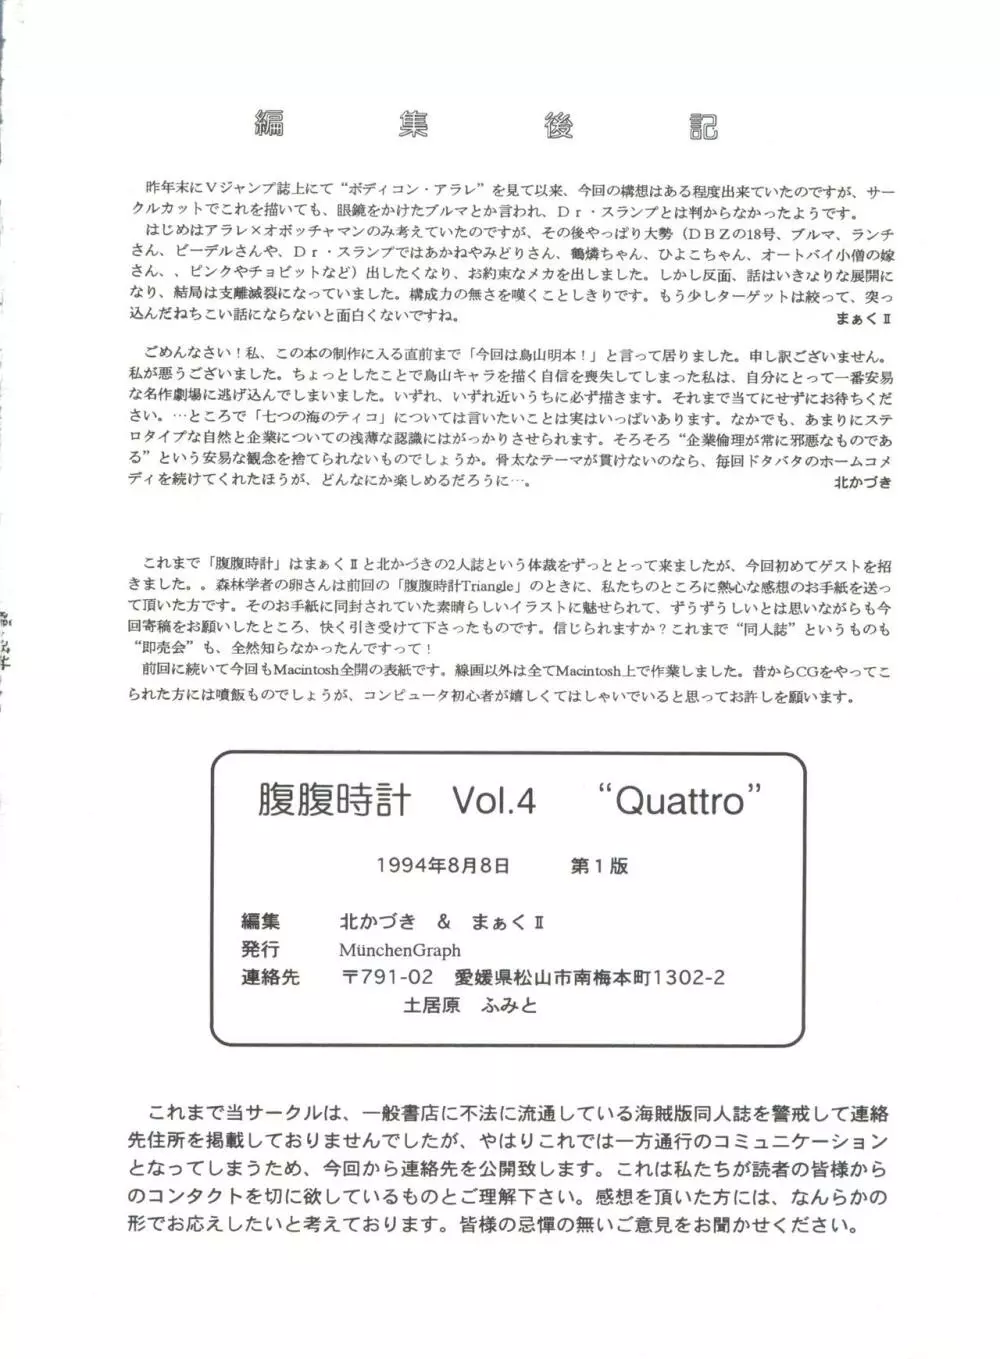 腹腹時計 Vol.4 “Quattro” 89ページ